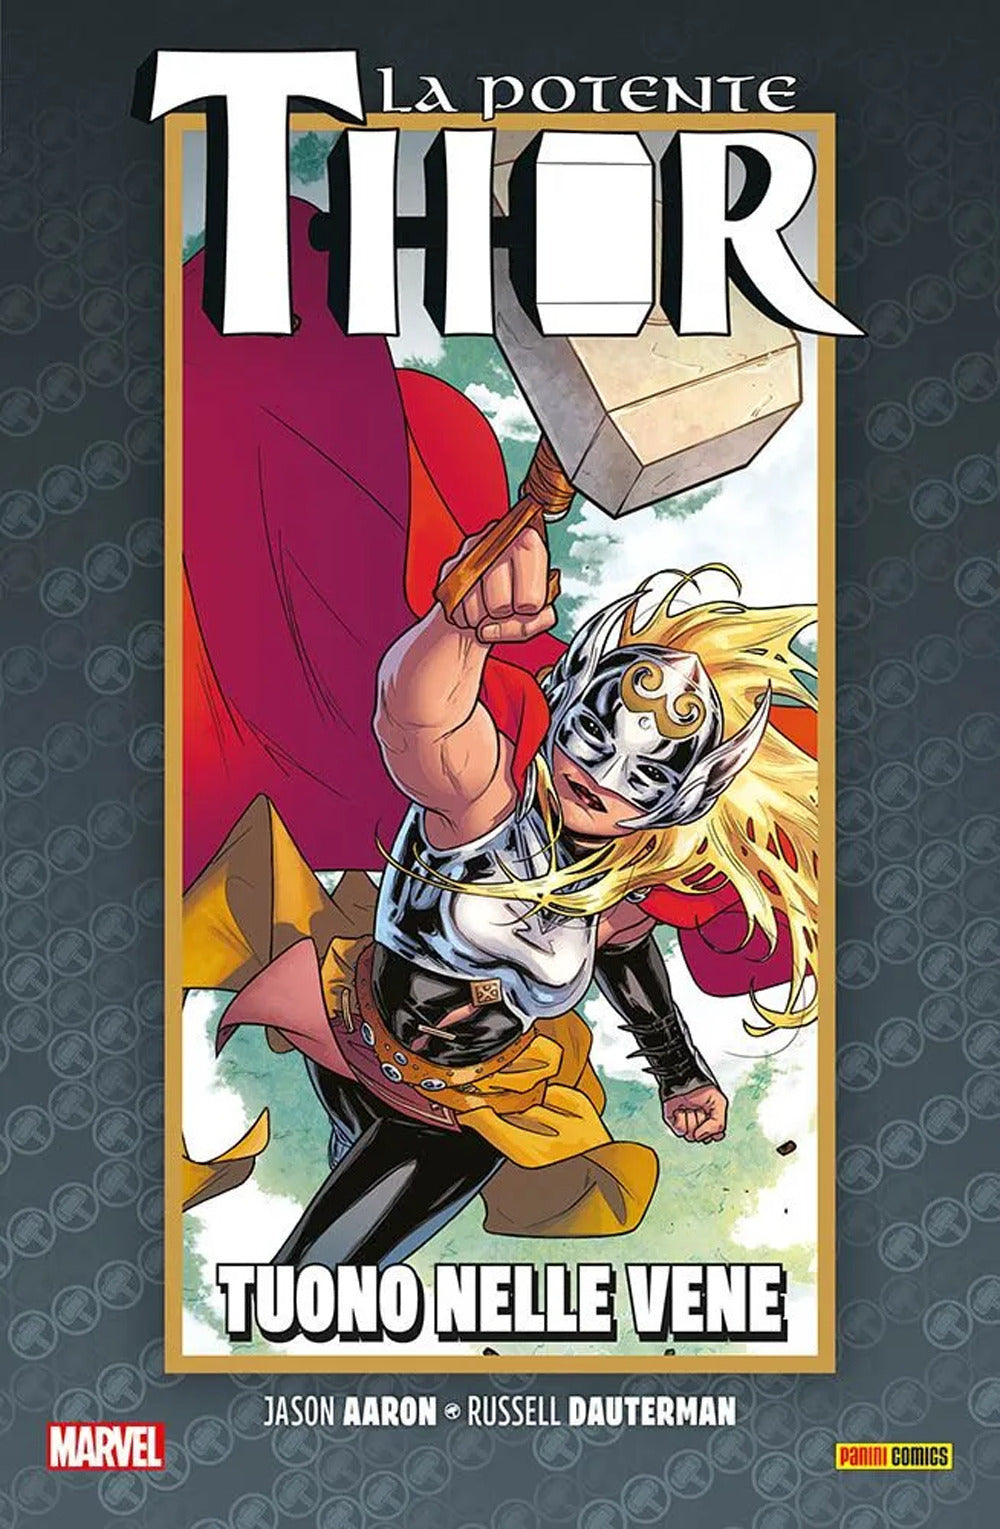 La vita e la morte della potente Thor. Vol. 3: Tuono nelle vene.